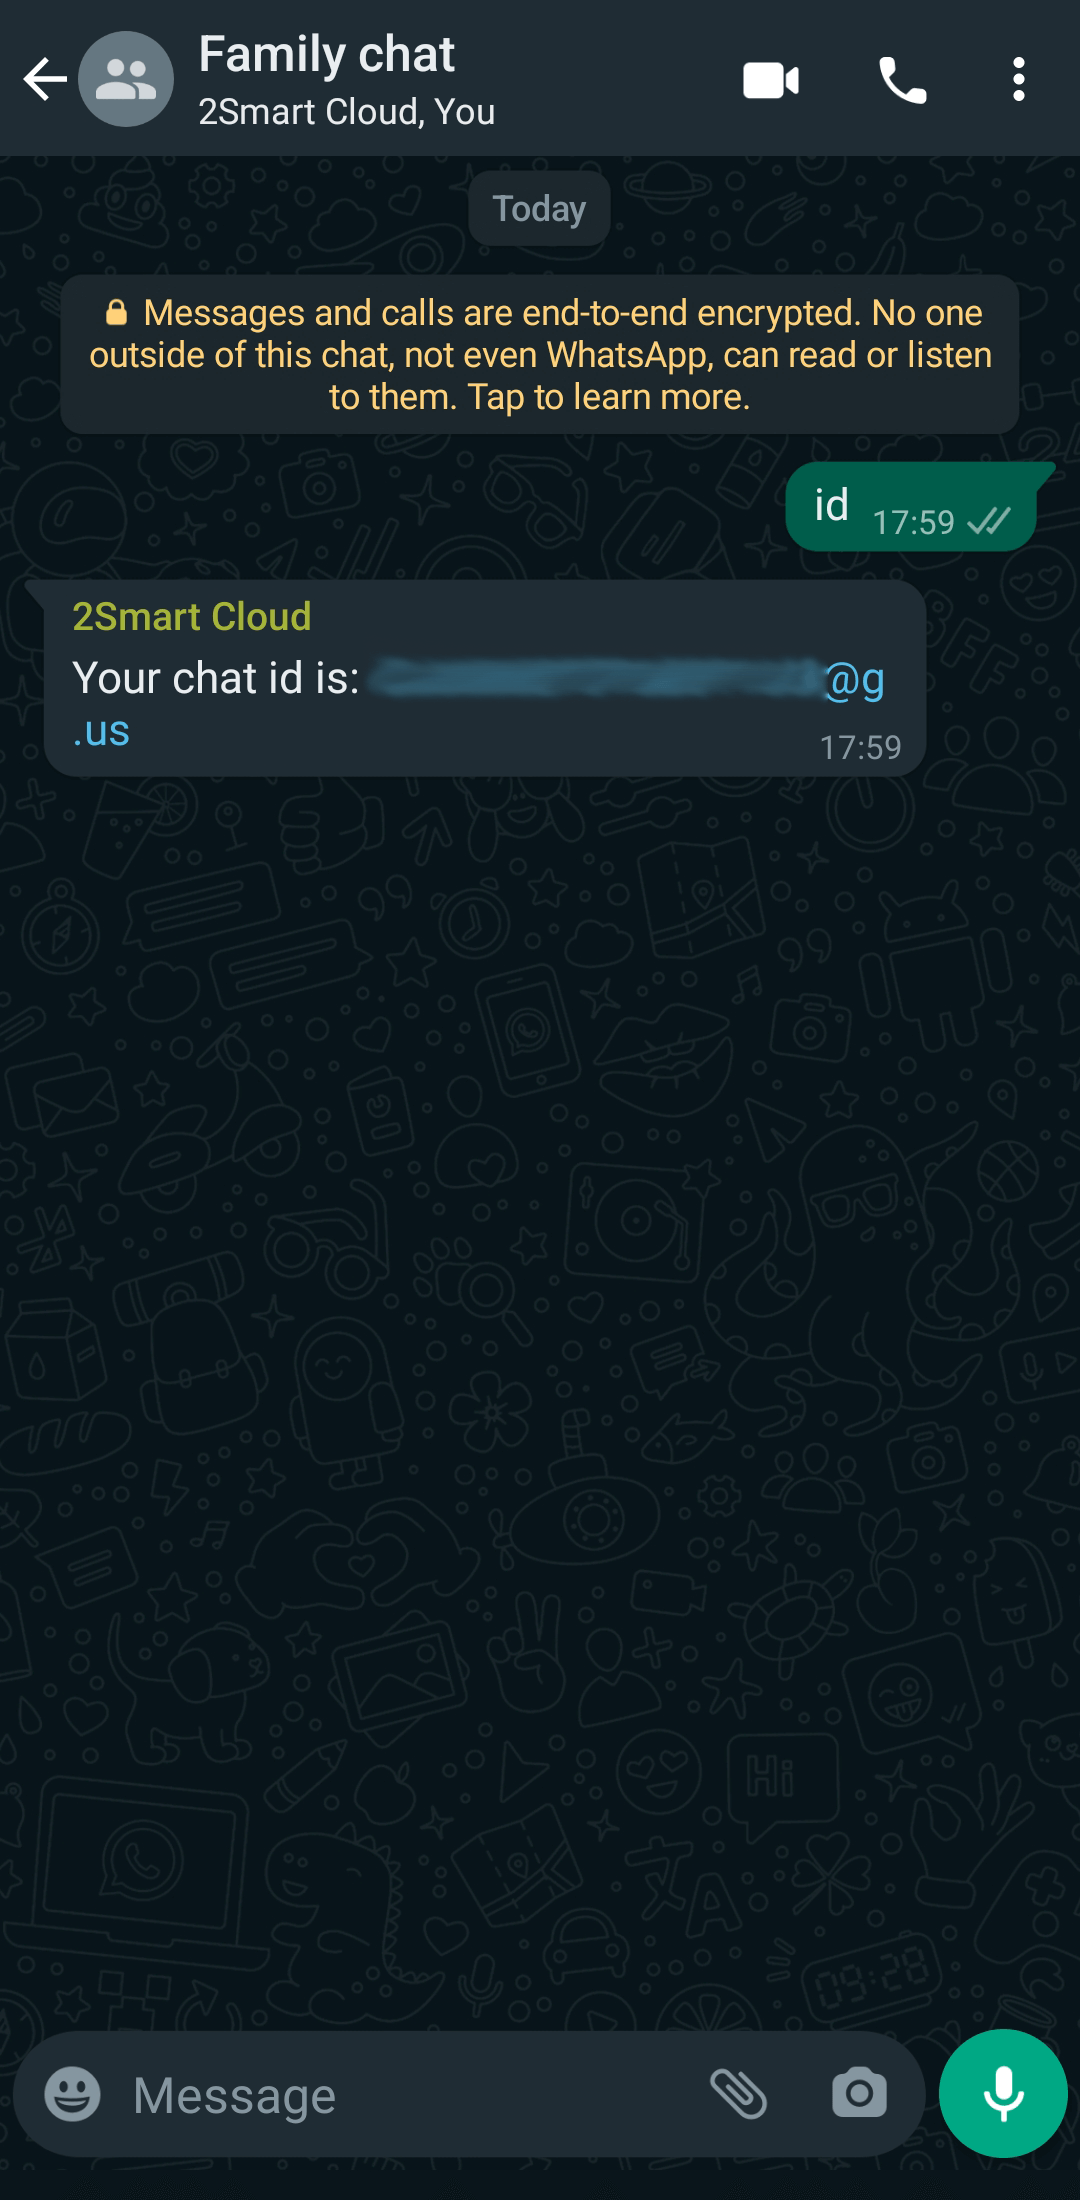 The 2Smart Notification WhatsApp bot